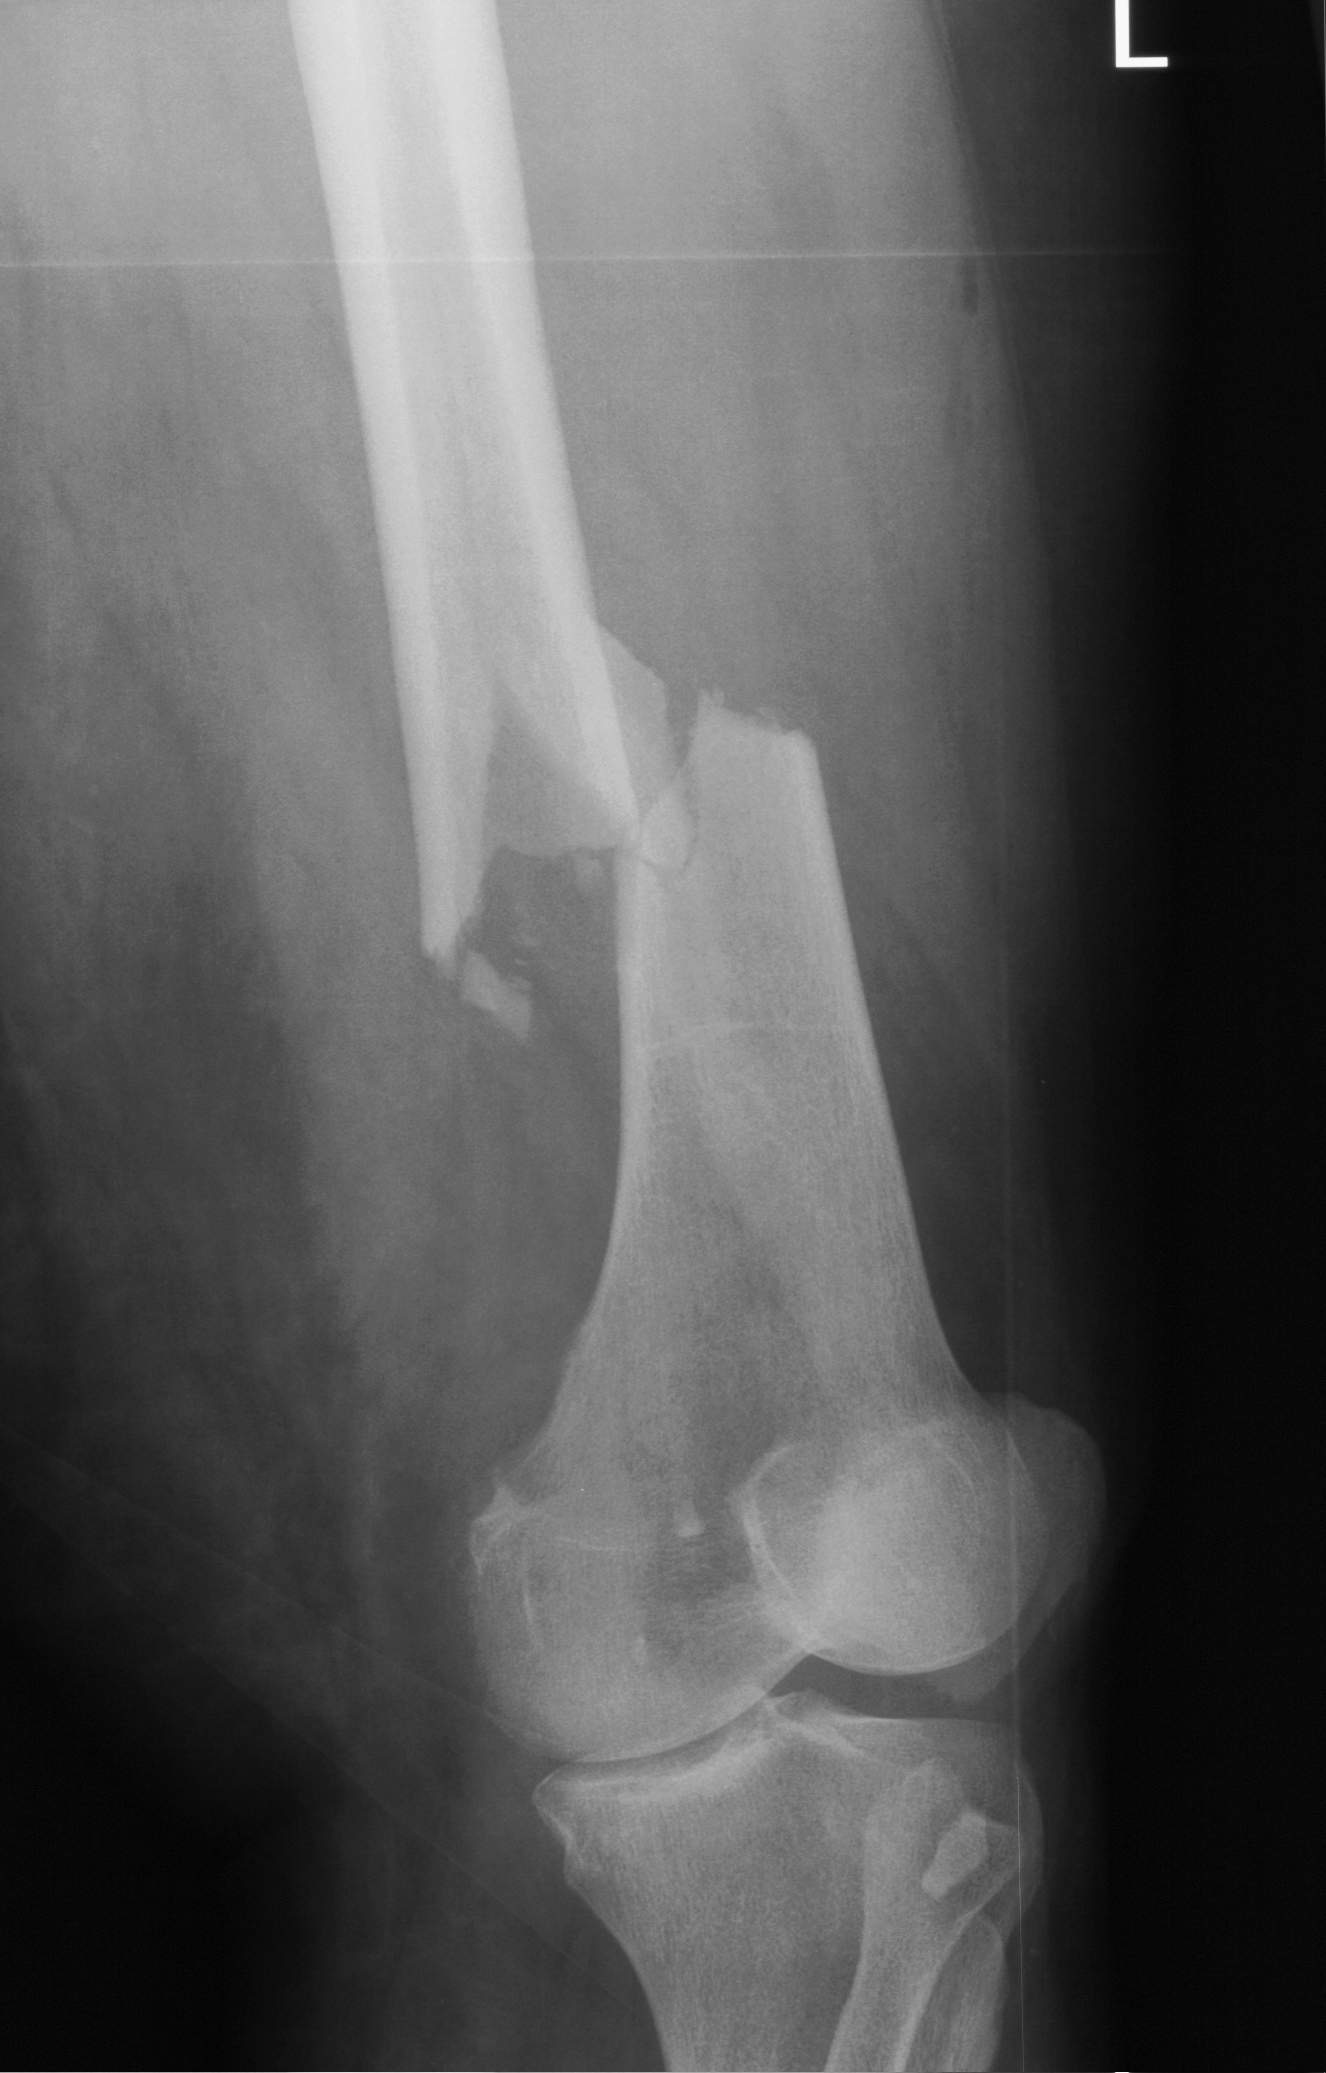 Röntgenaufnahme eines Oberschenkelbruchs